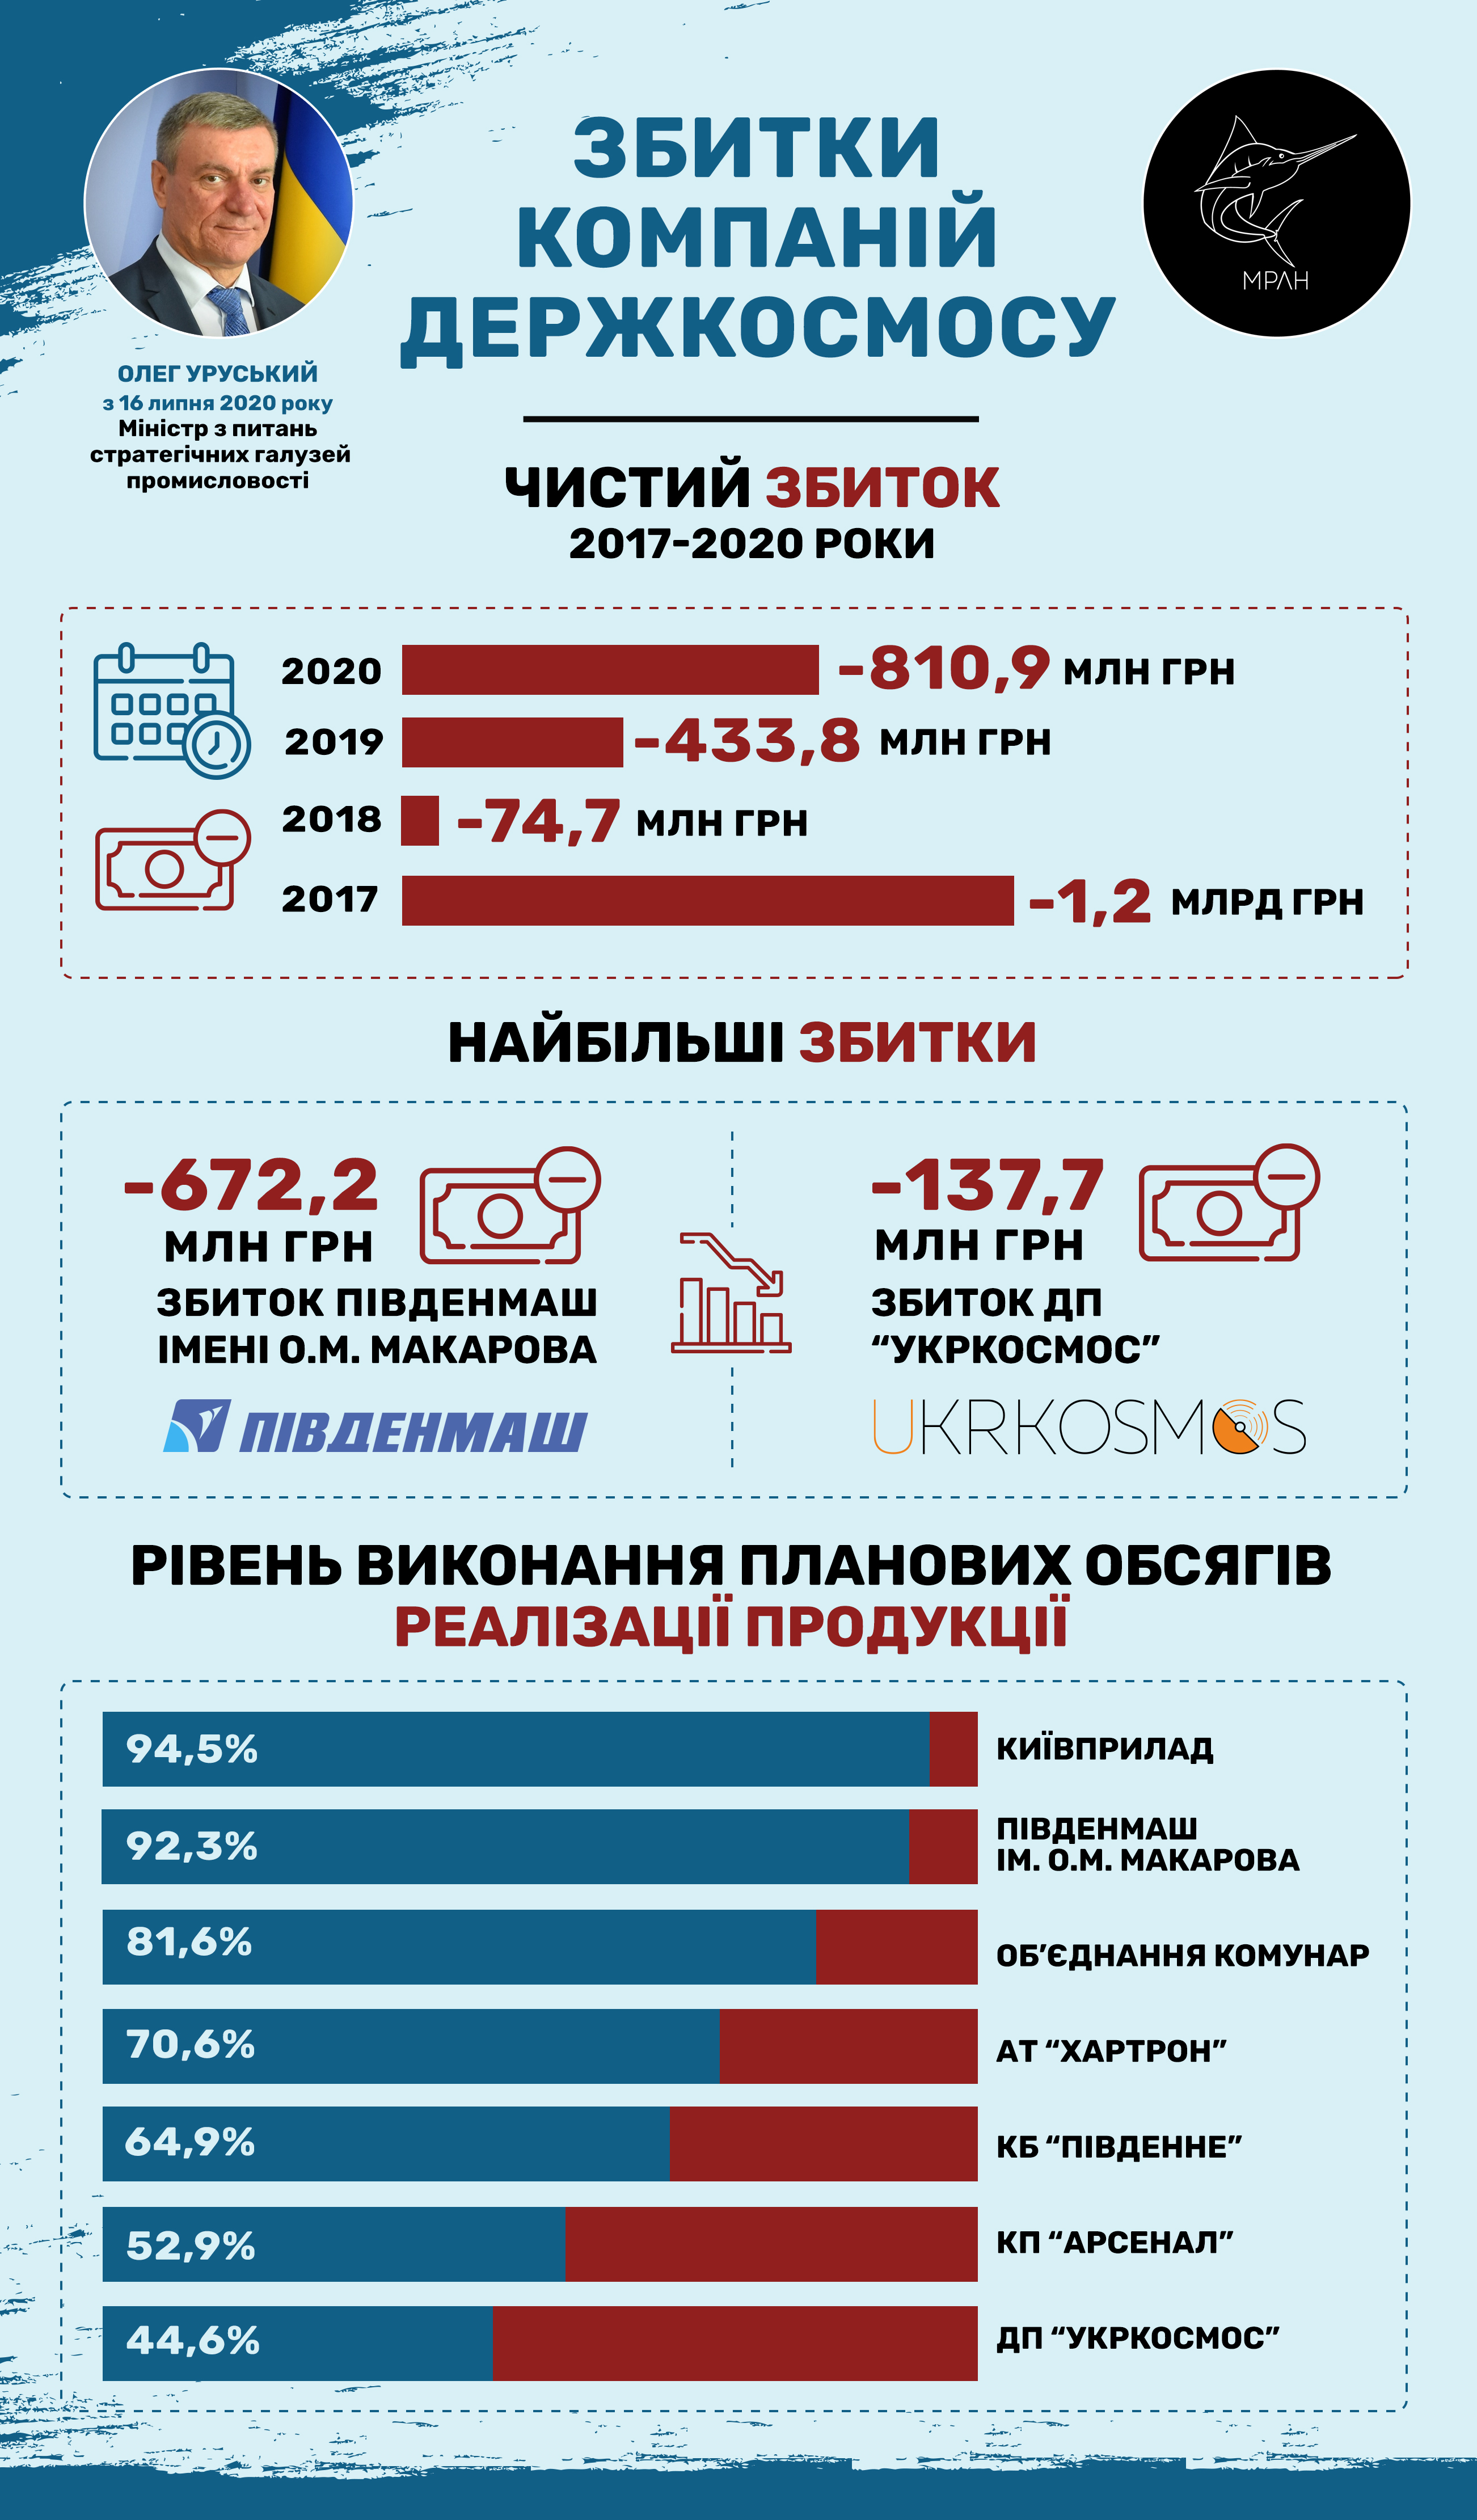 Убытки компаний Госкосмоса в прошлом году составили 810 млн грн